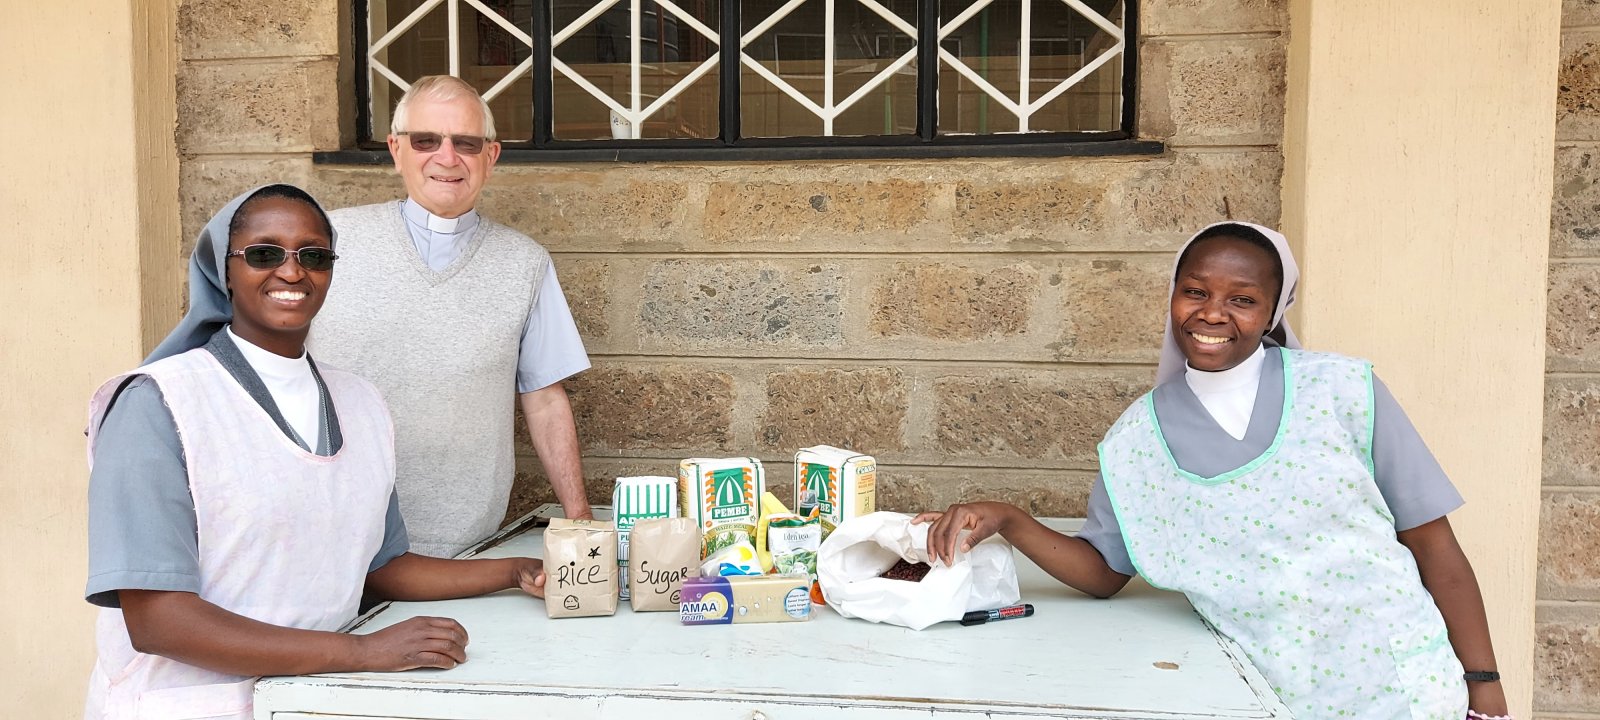 Salesian Cooperators help Sisters feed families in Kenya